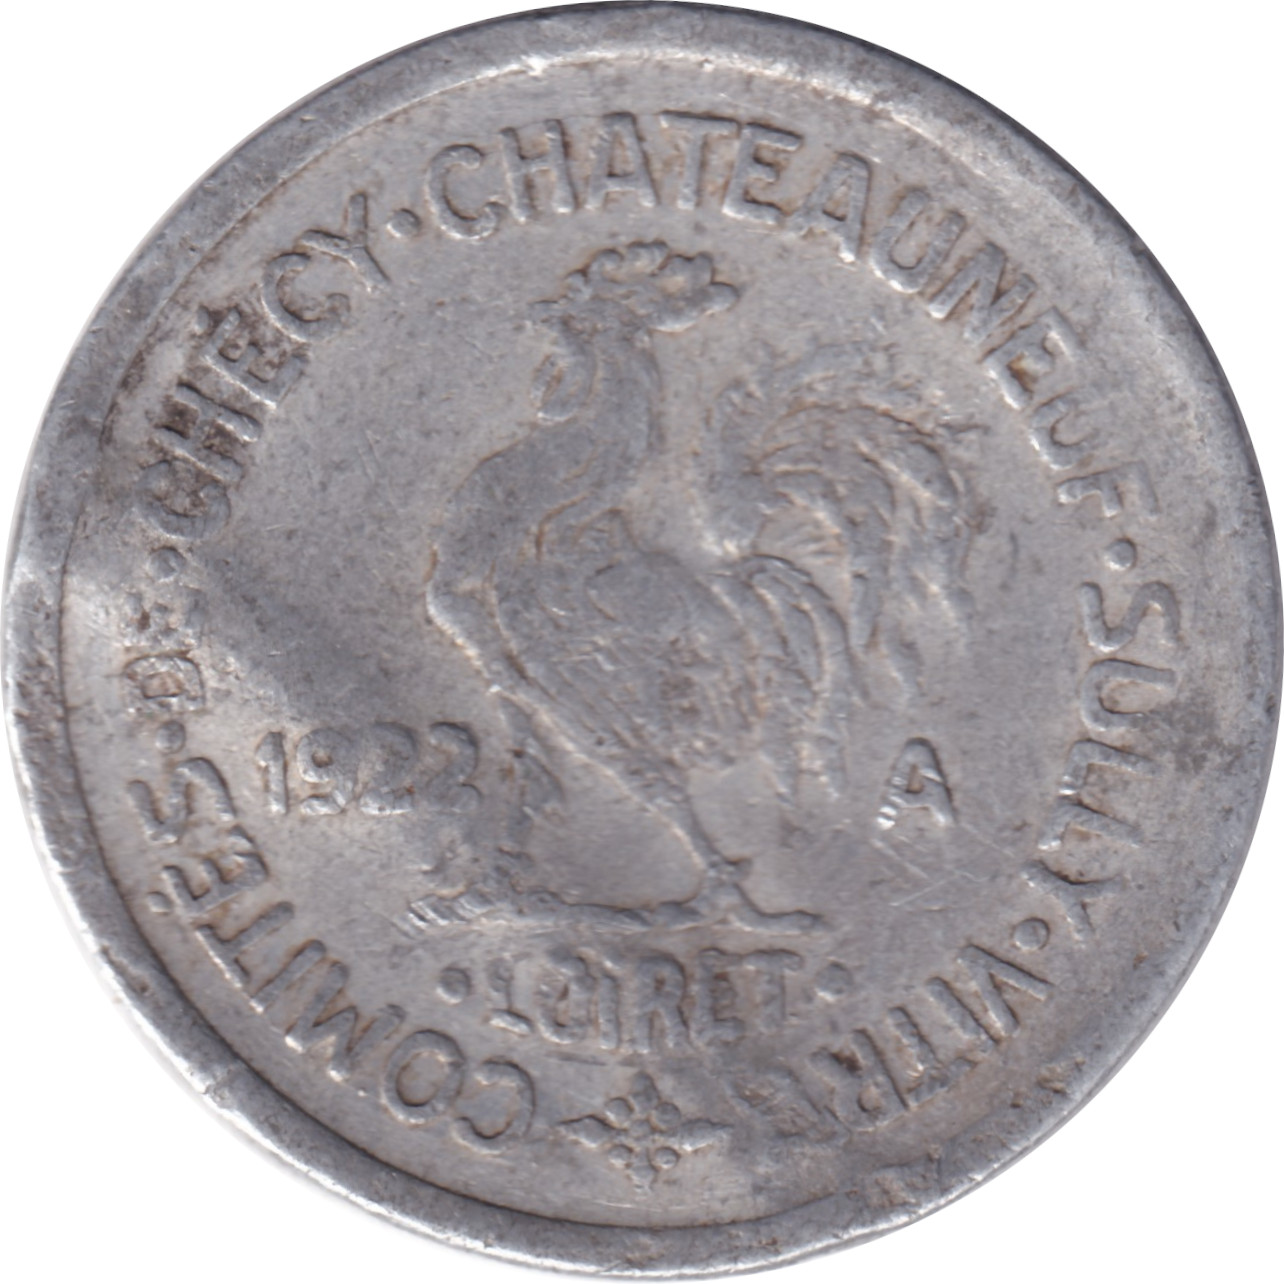 10 centimes - Loiret